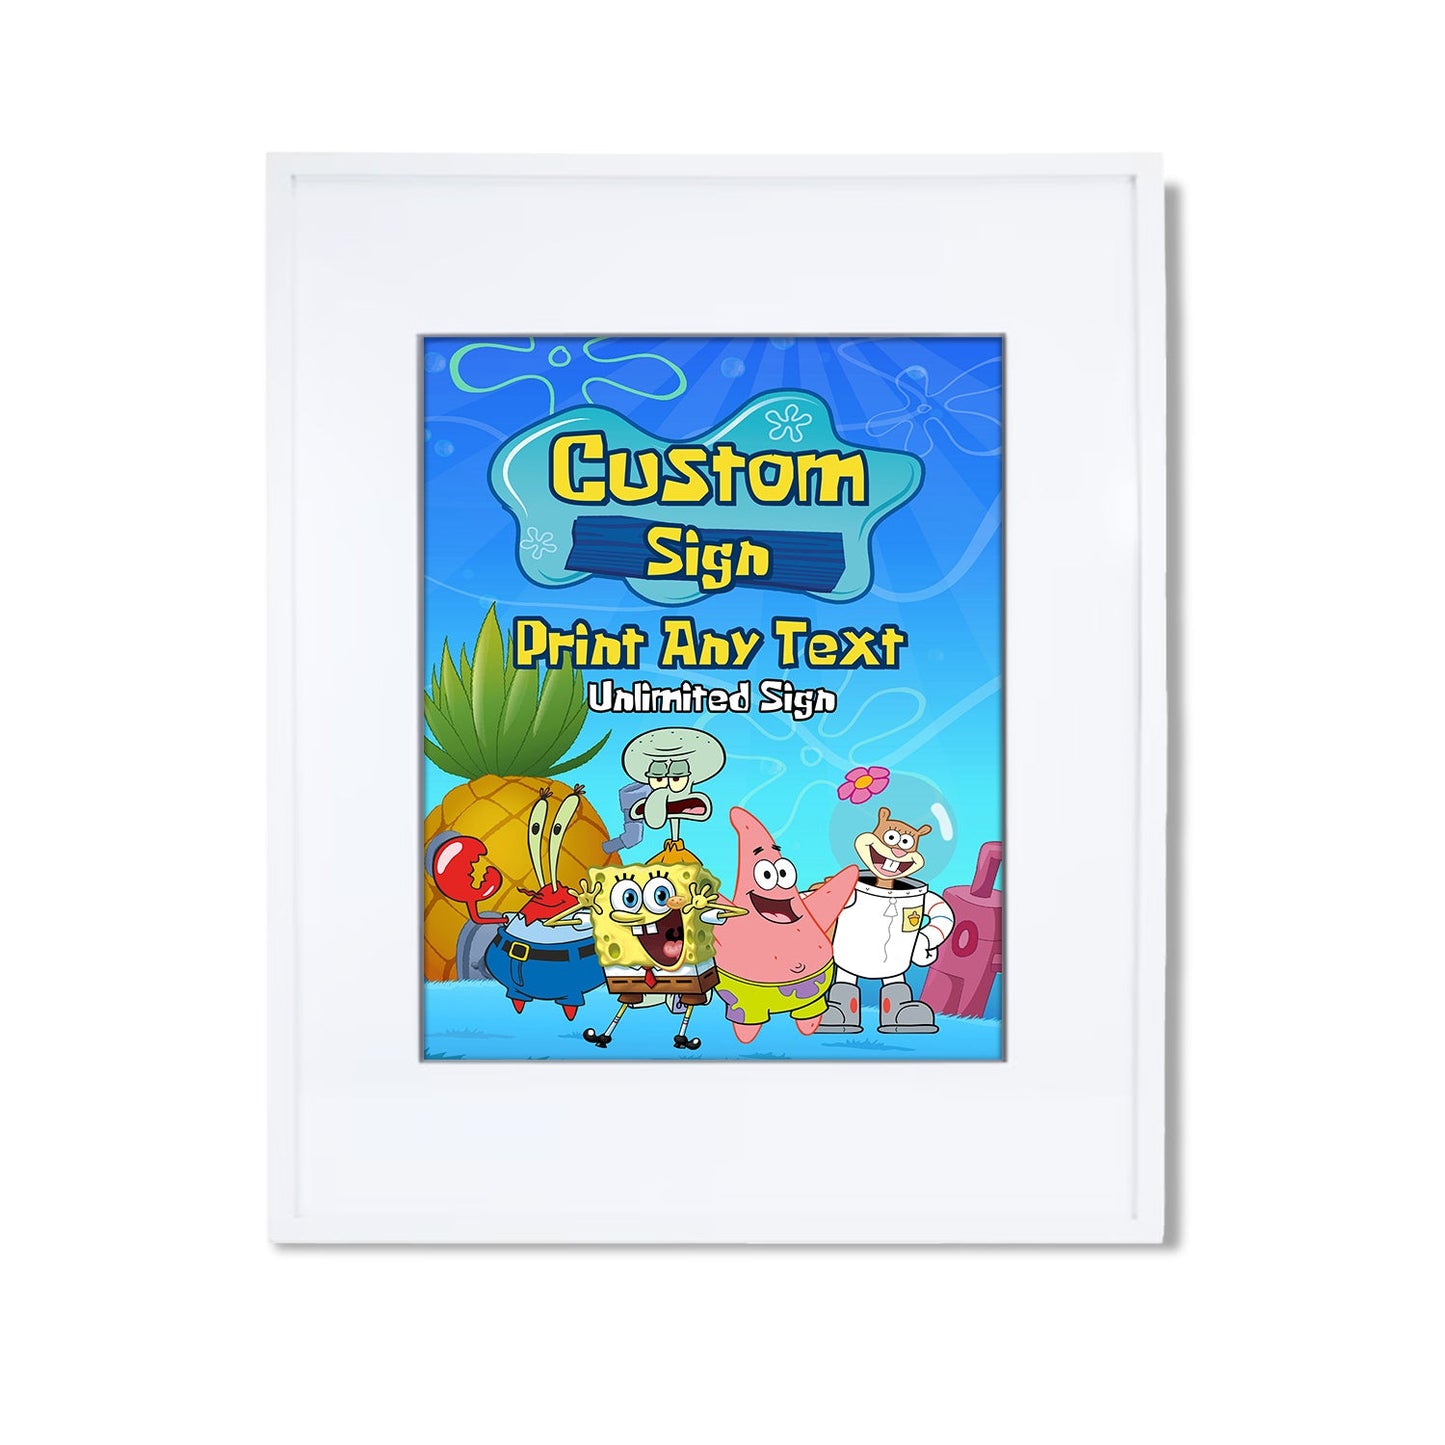 Spongebob themed custom signs